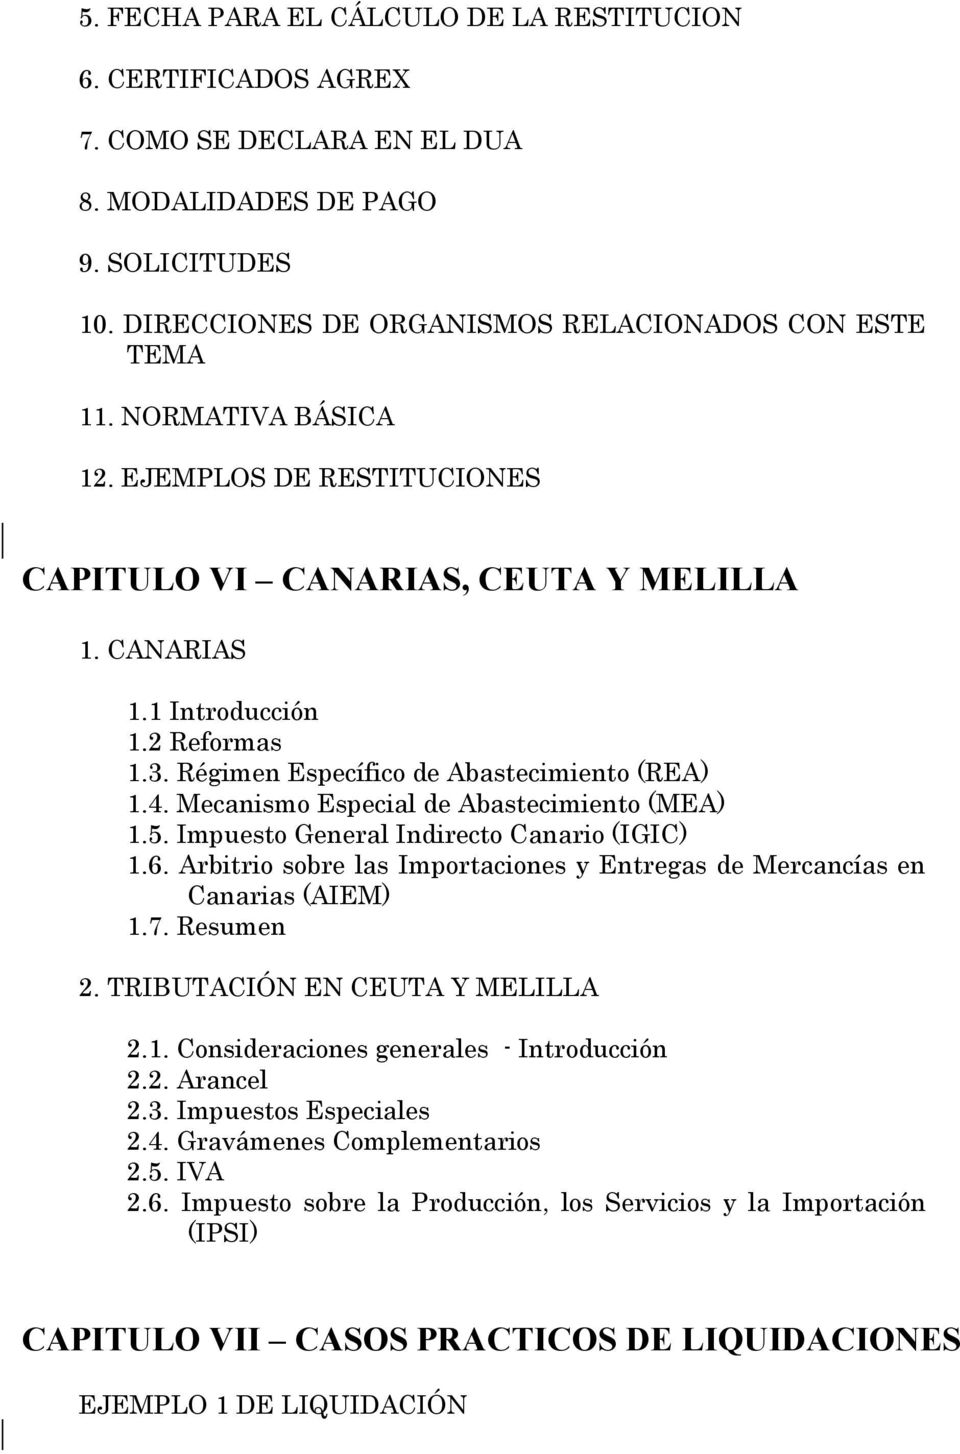 Mecanismo Especial de Abastecimiento (MEA) 1.5. Impuesto General Indirecto Canario (IGIC) 1.6. Arbitrio sobre las Importaciones y Entregas de Mercancías en Canarias (AIEM) 1.7. Resumen 2.